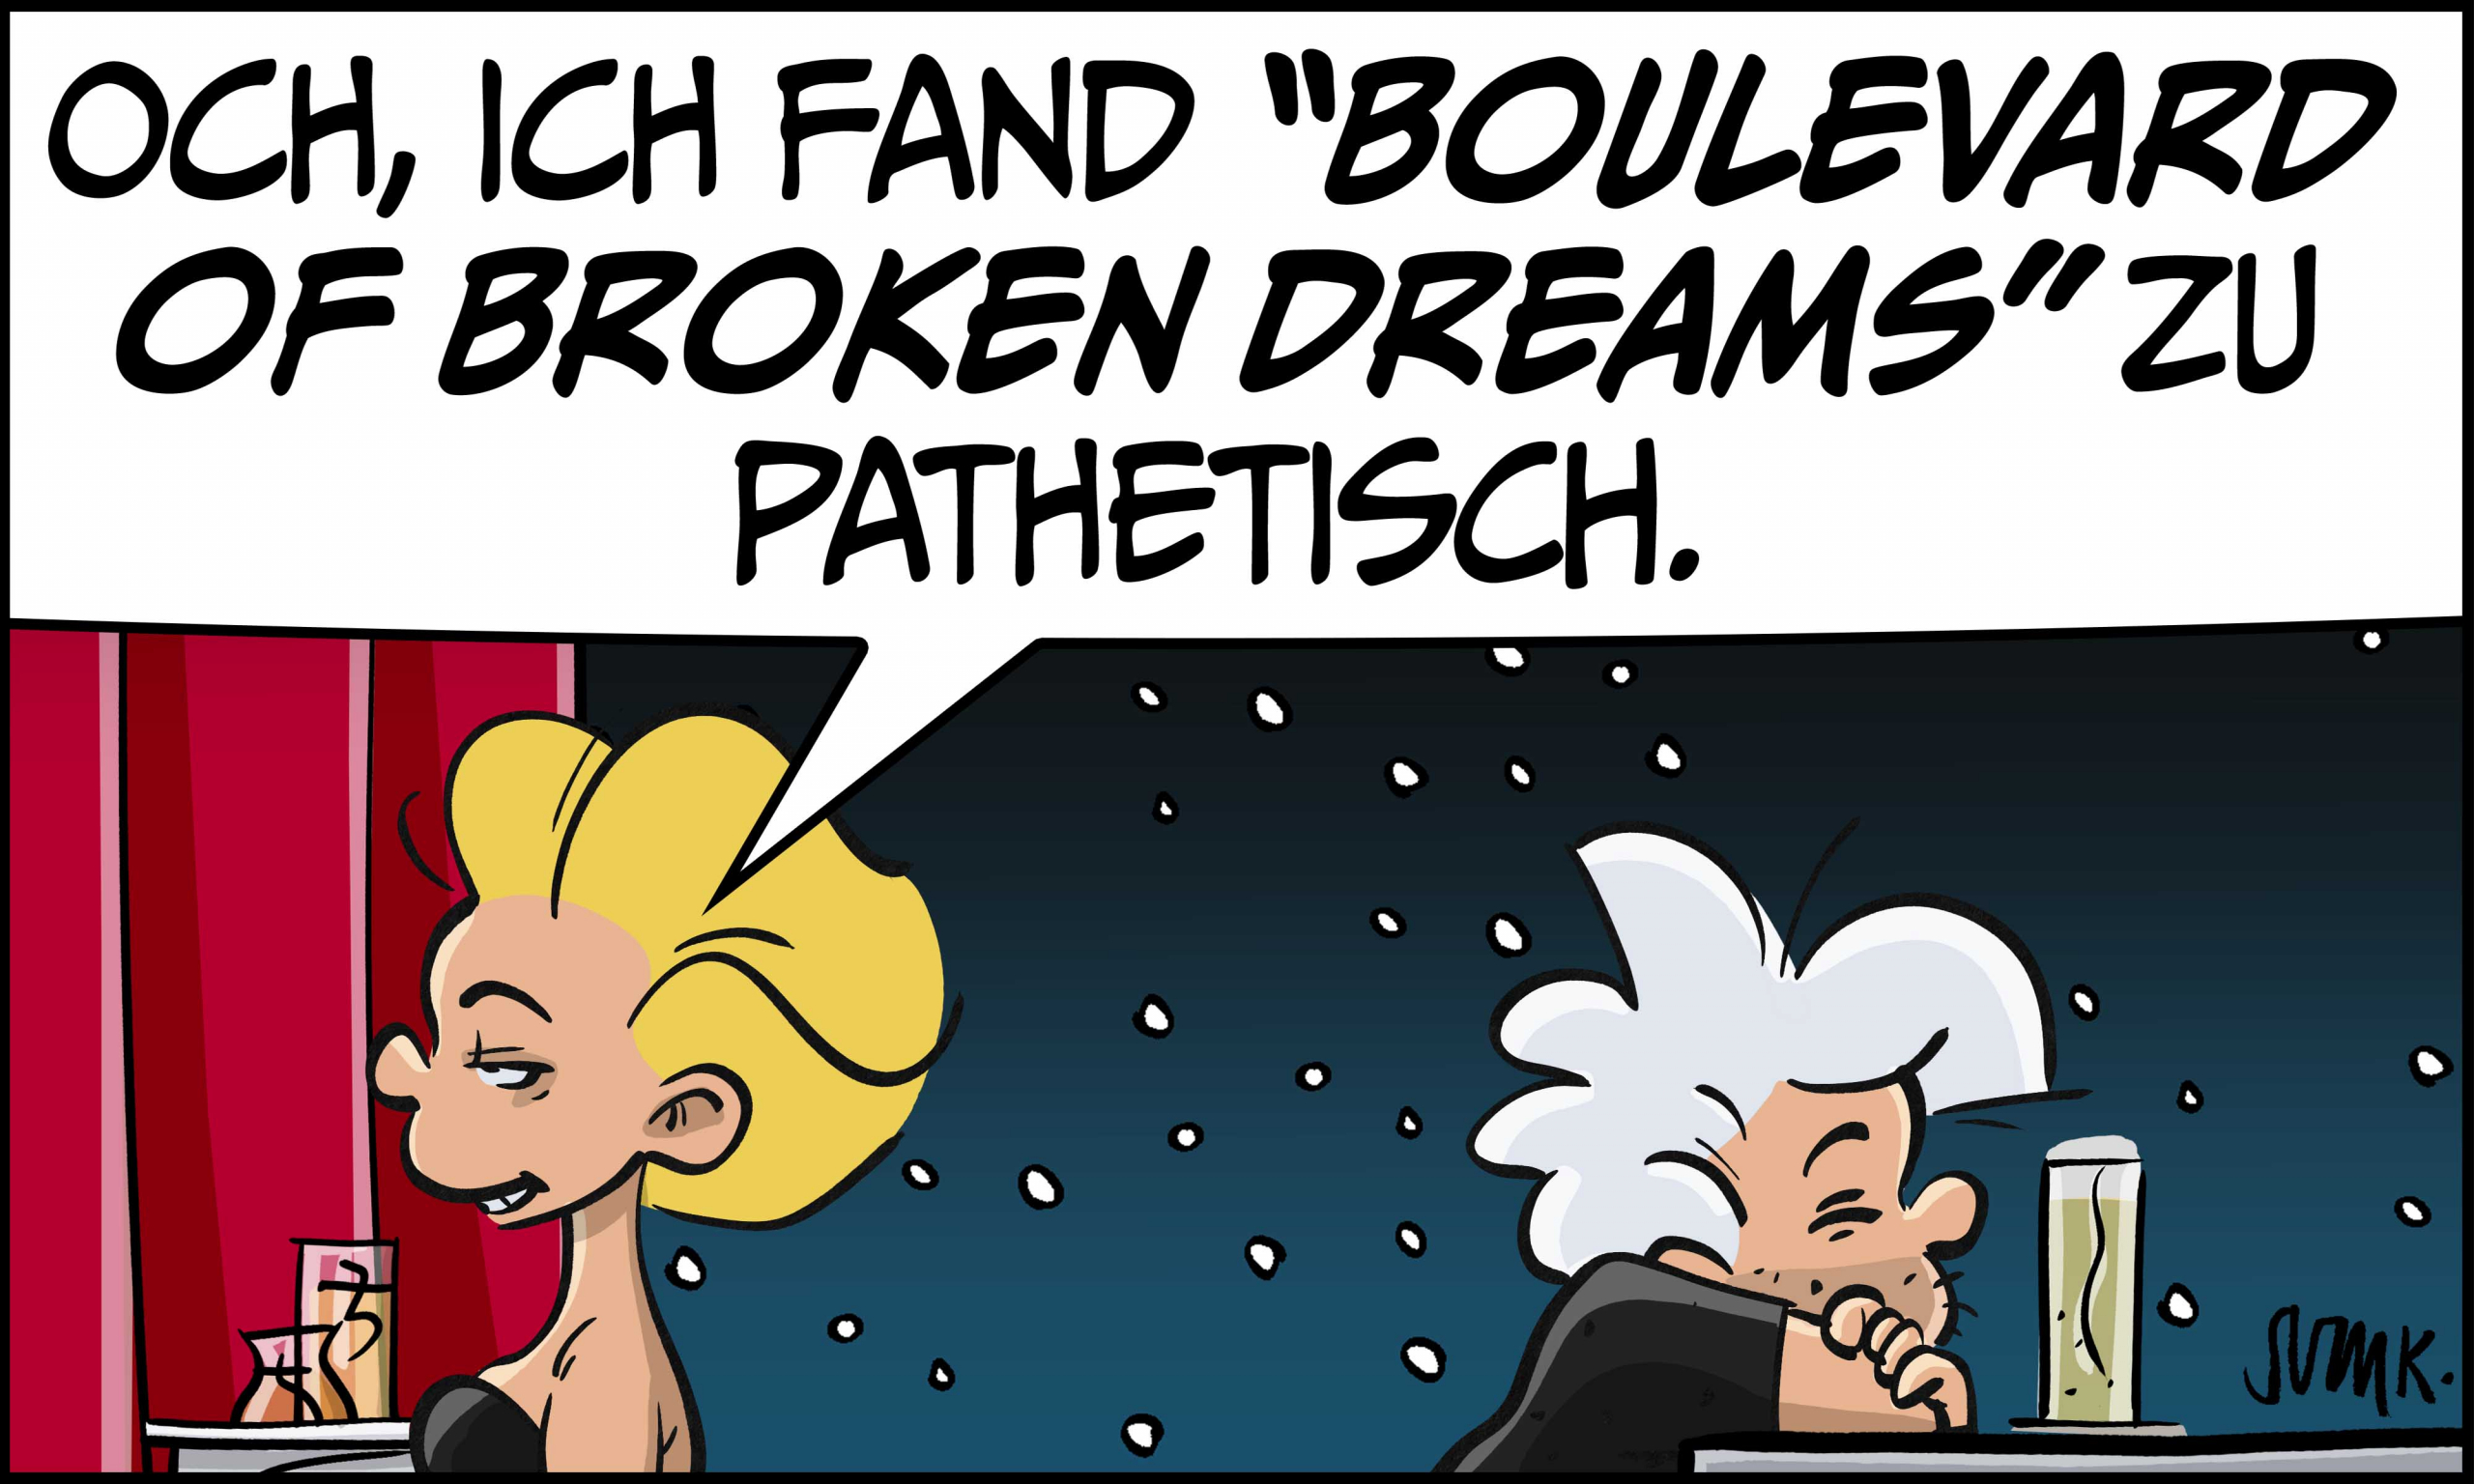 Ivy: „Och, ich fand 'Boulevard of Broken Dreams' zu pathetisch.“